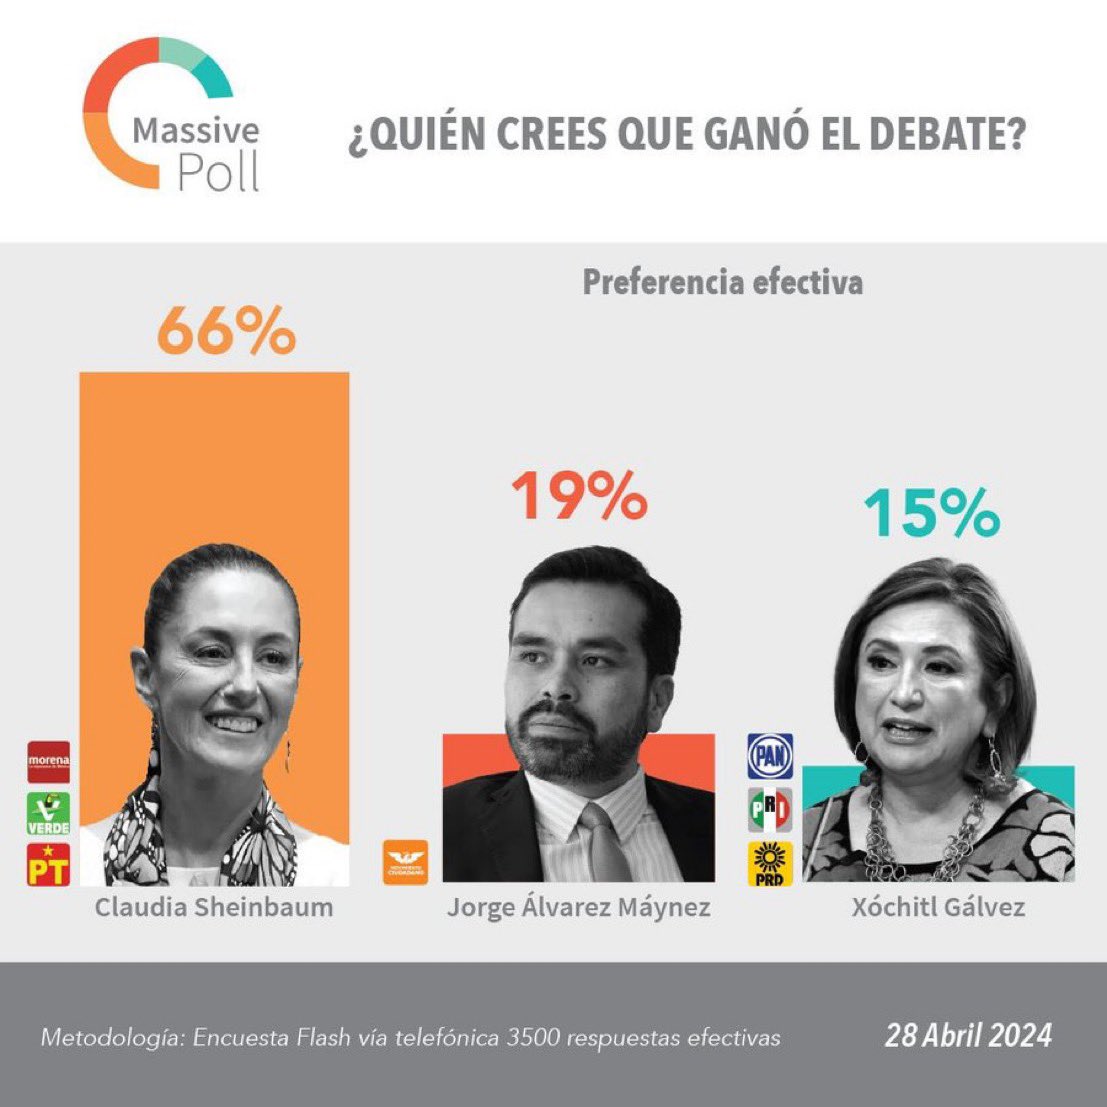 ¡Doblete! Volvimos a ganar el #DebatePresidencial y el PRIAN cae al 3er lugar. #ClaudiaArrasaDebate